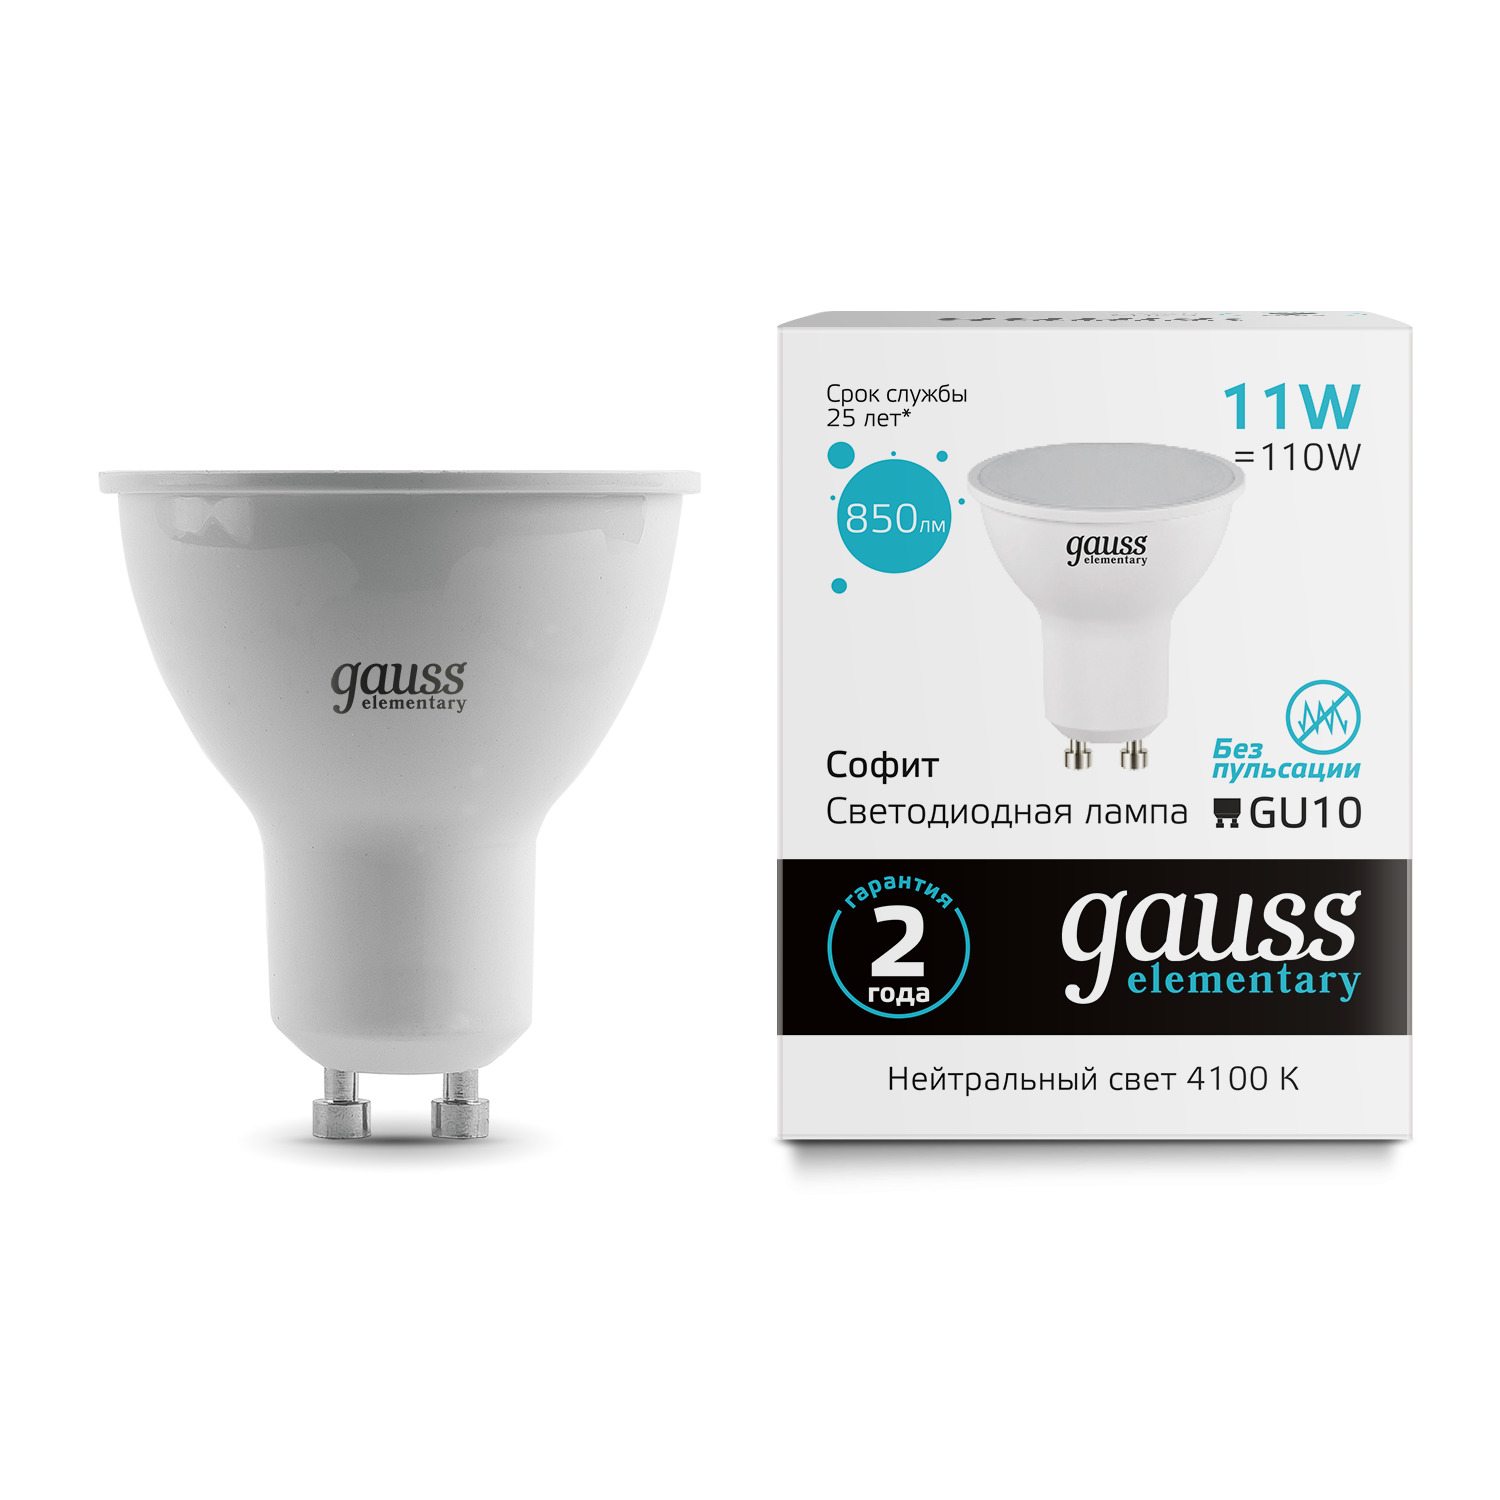 Лампа Gauss Elementary MR16 11W 4100K GU10 лампочка gauss 13526 elementary mr16